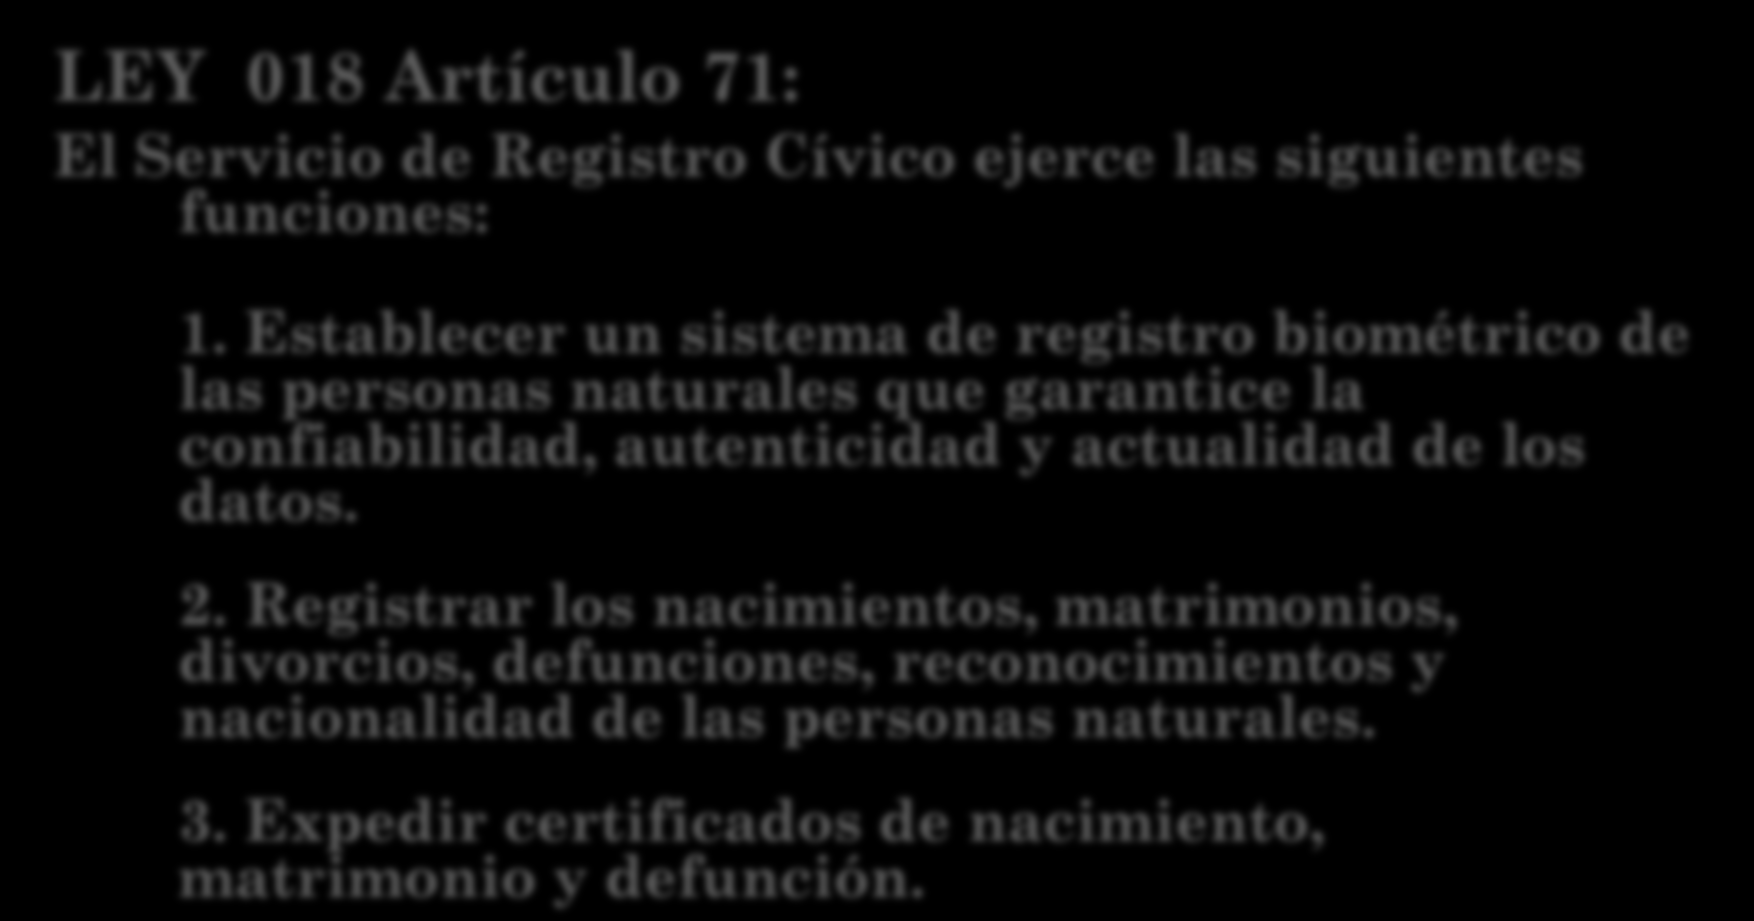 SERVICIO DE REGISTRO CÍVICO (SERECÍ) LEY 018 Artículo 71: El Servicio de Registro Cívico ejerce las siguientes funciones: 1.